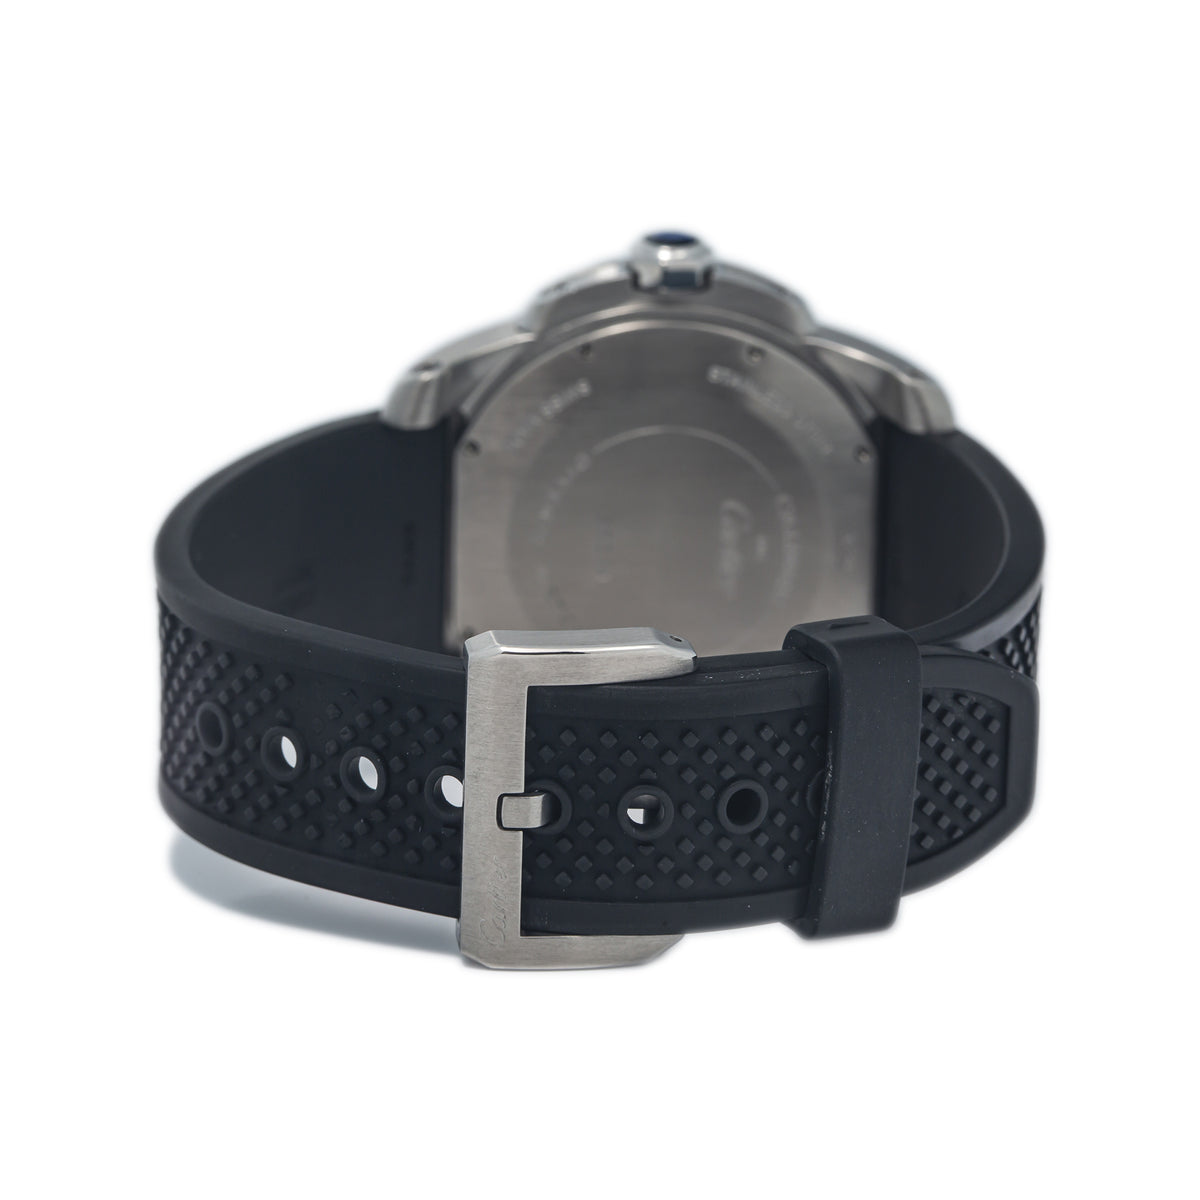 Cartier Calibre de Cartier Diver 3729 W7100056 Steel Black Automatic Watch 42mm